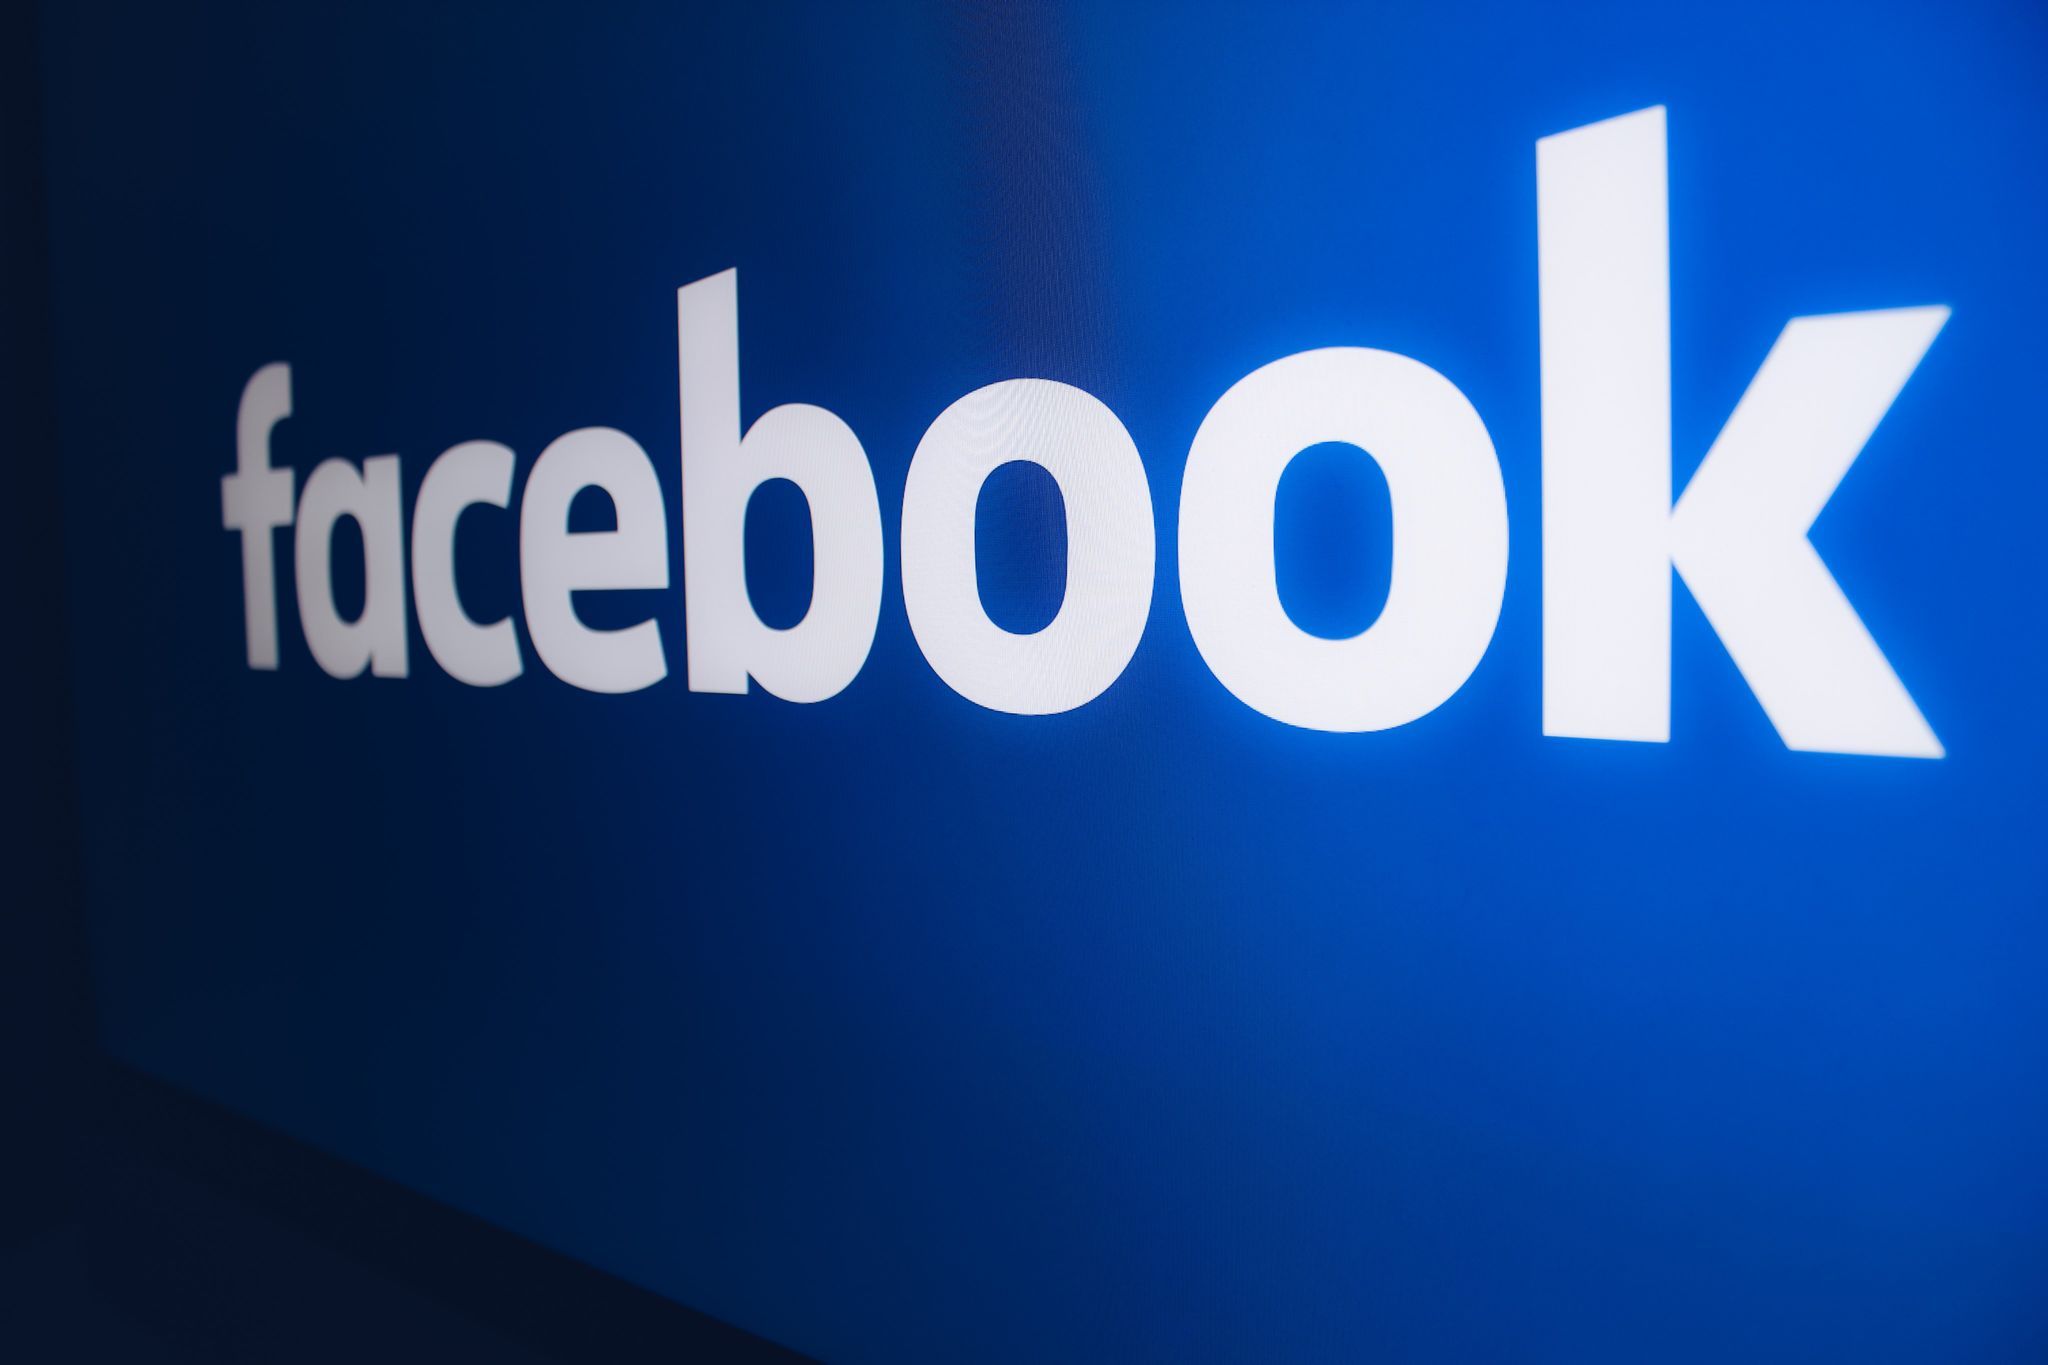 Facebook сплатить 650 млн доларів за використання приватних даних без дозволу